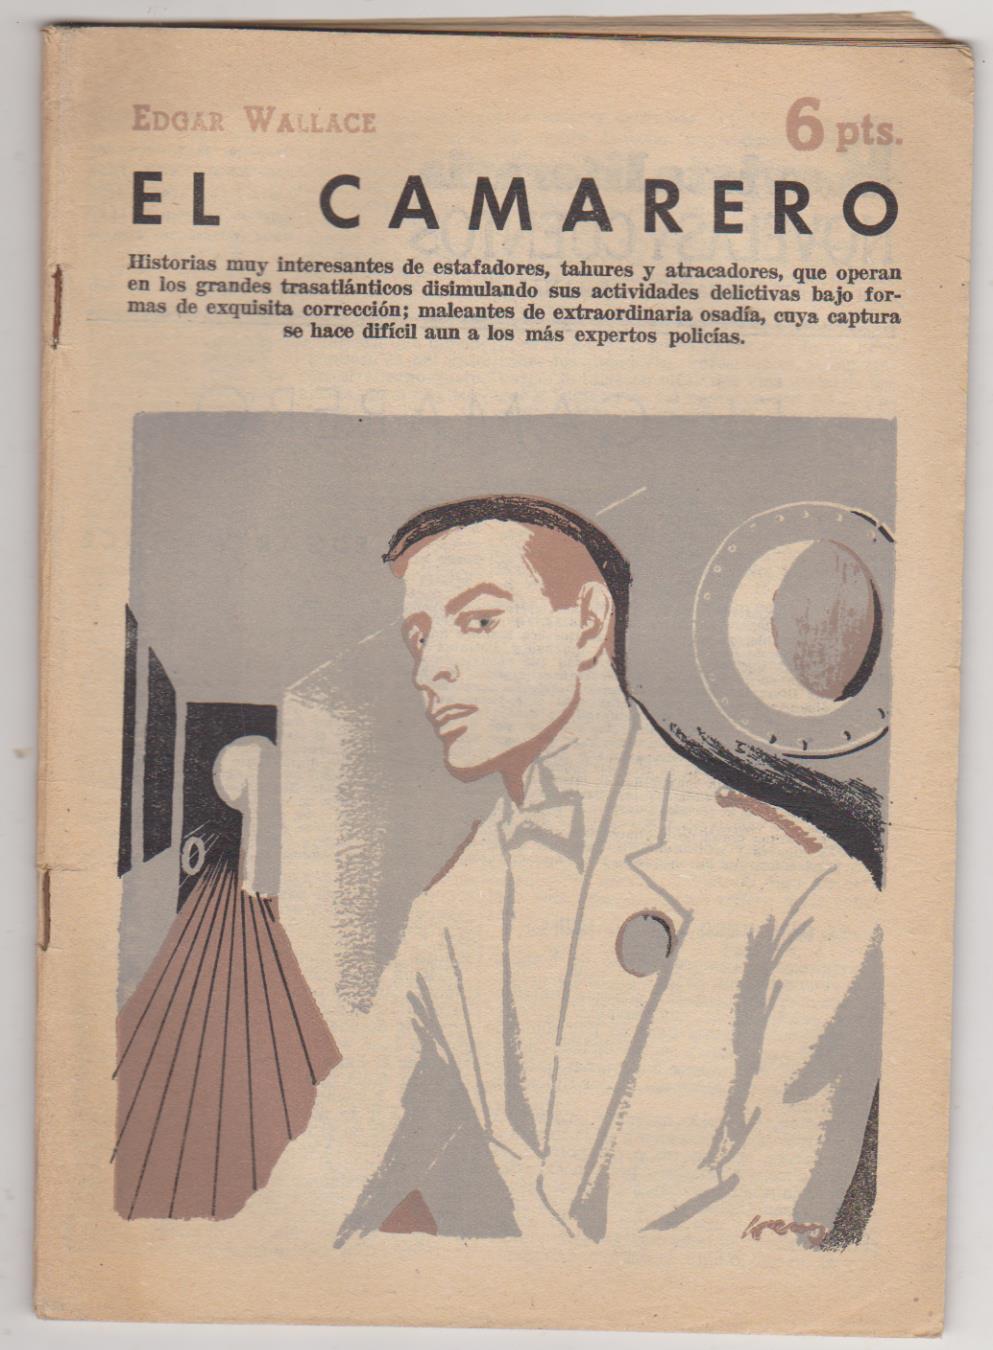 Revista Literaria nº 1503. Edgar Wallace. El Camarero. Año 1960